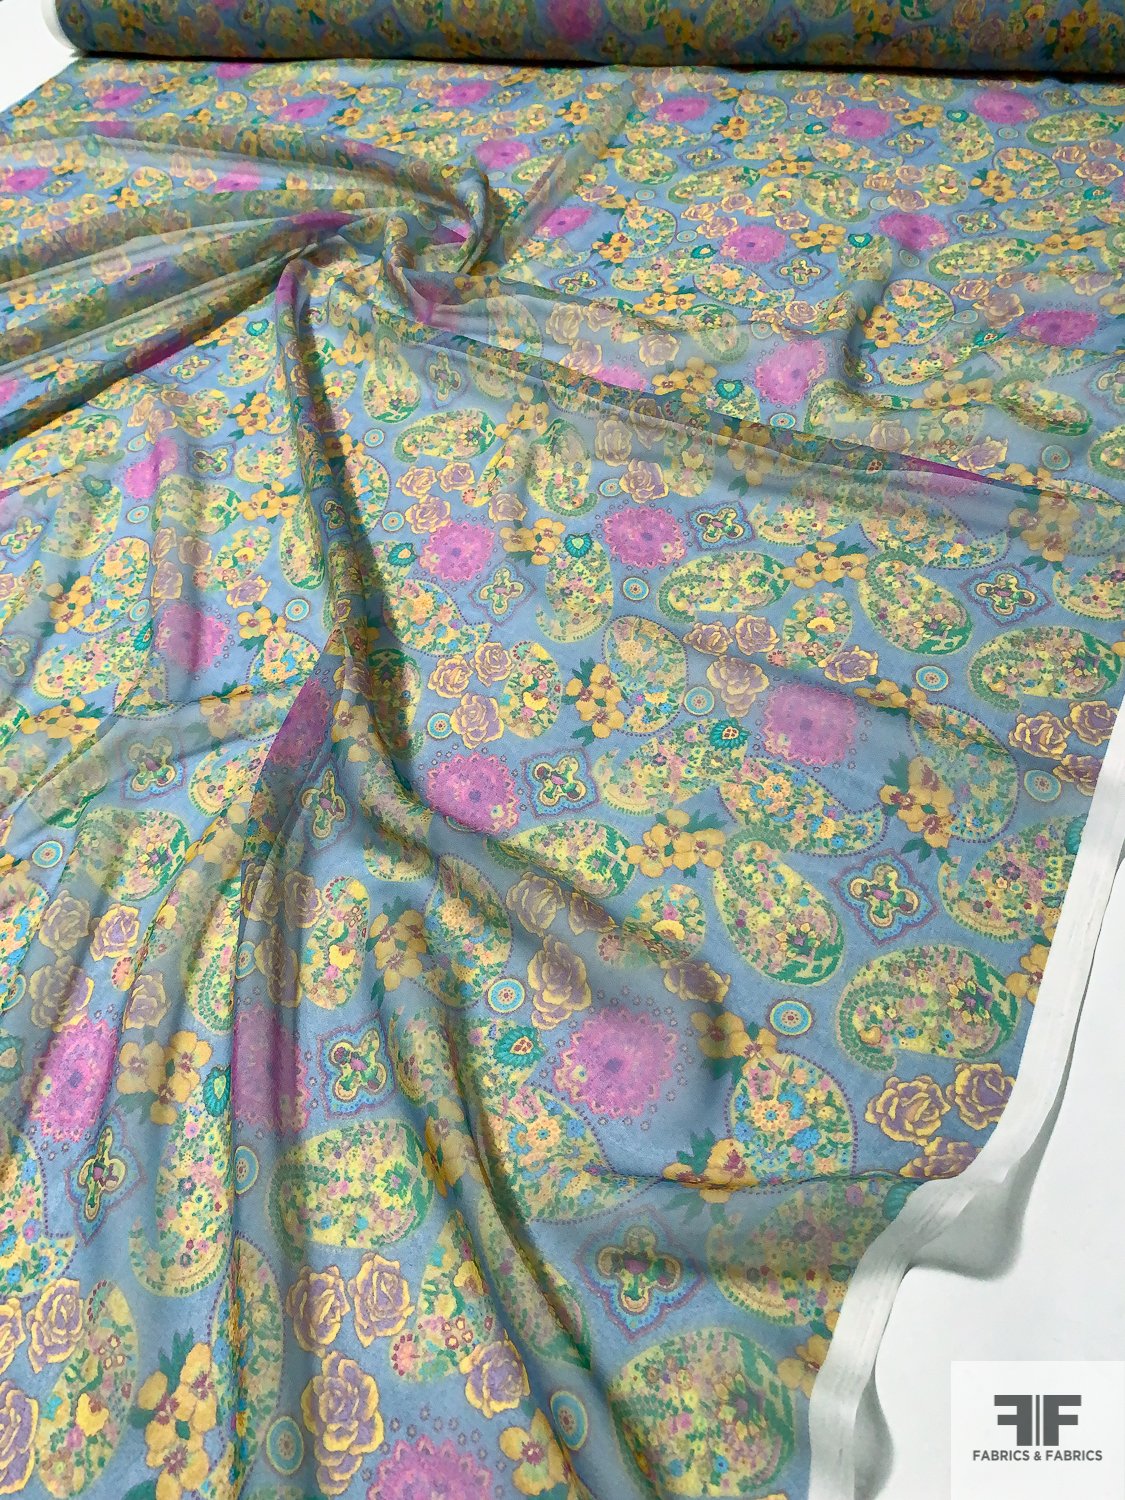 Paisley Floral Printed Silk Chiffon - Yellow / Hot Pink / Shades of Blue / Green